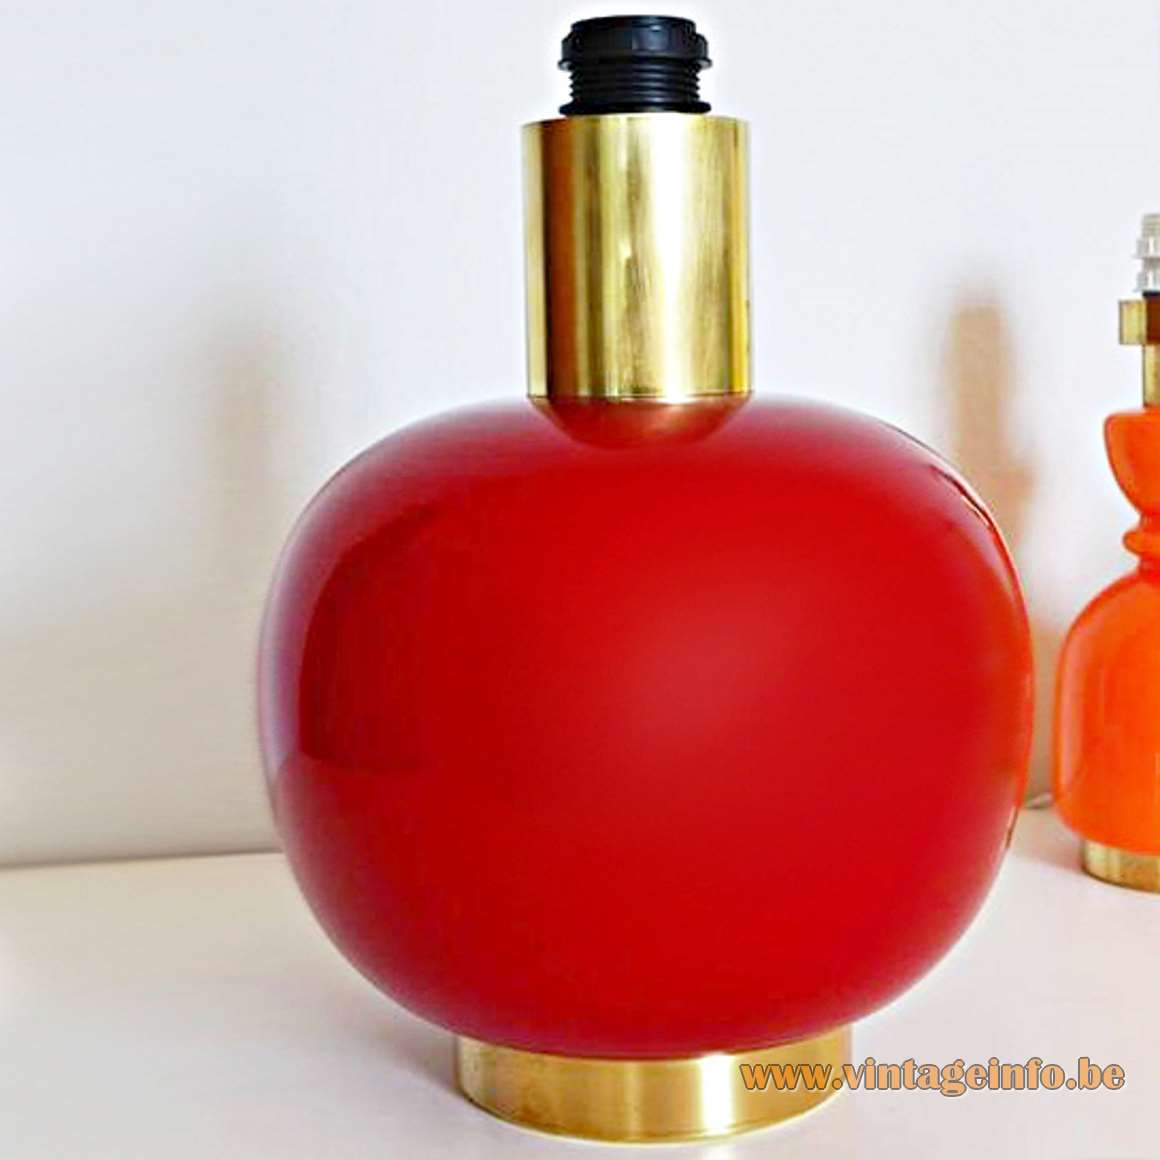 1970s maroon glass table lamp dark red burgundy globe base brass bottom lid E27 socket 1960s